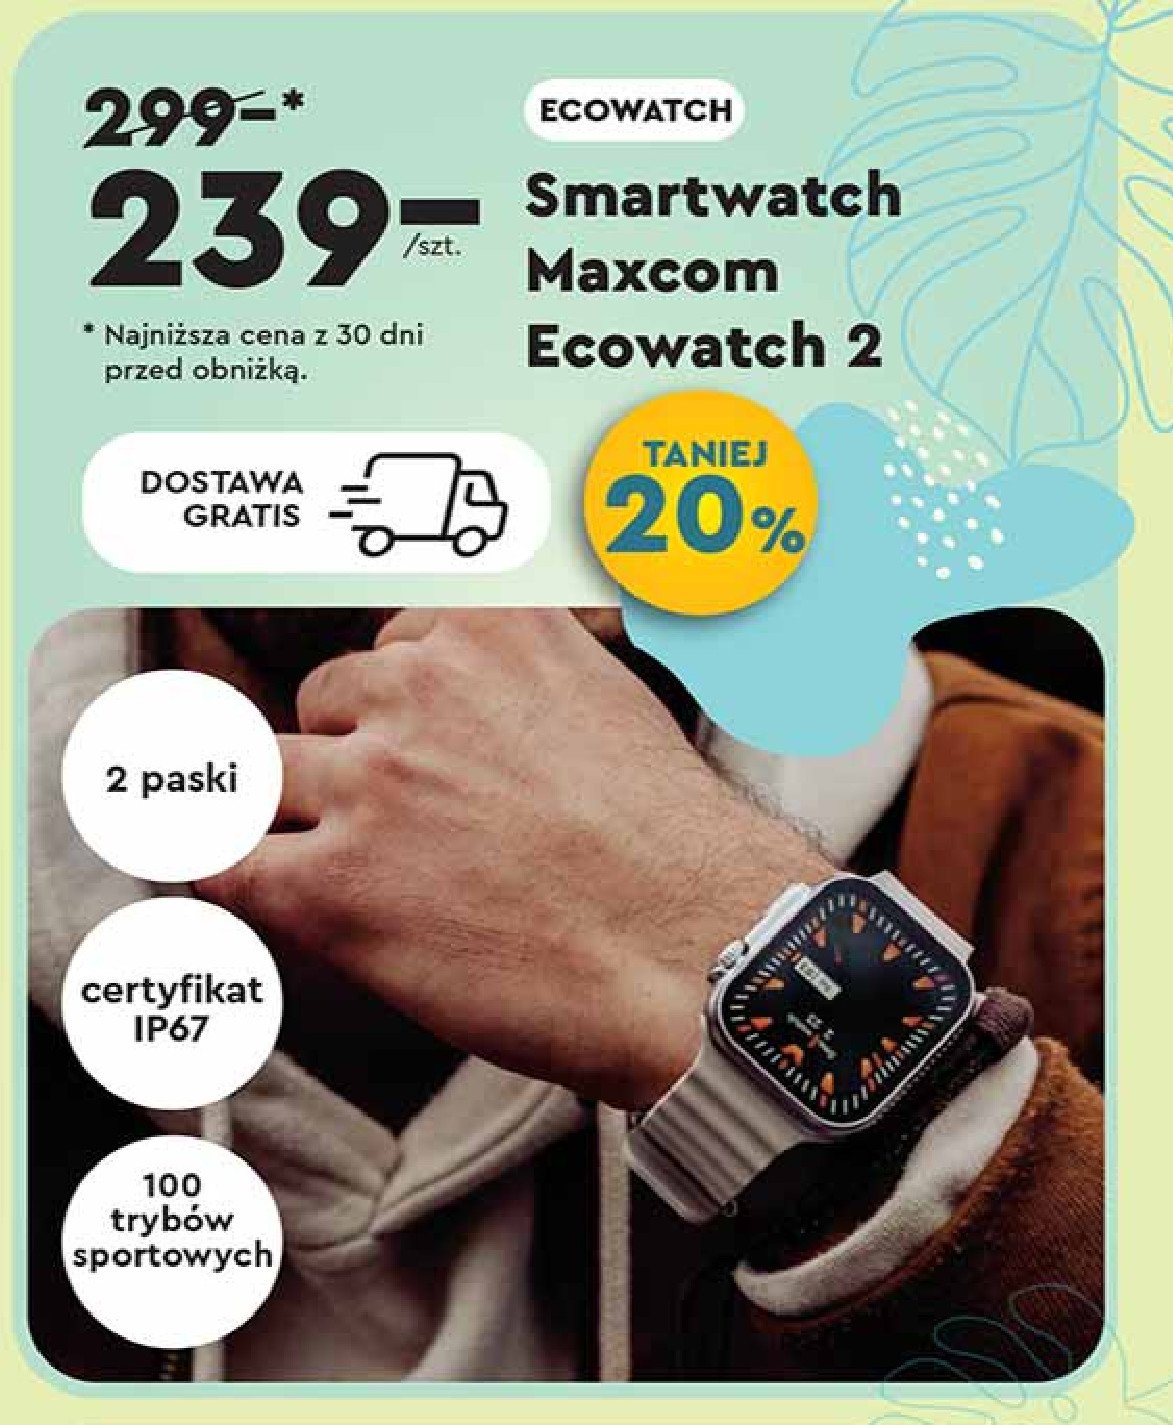 Smartwatch ecowatch 2 Maxcom promocja w Biedronka